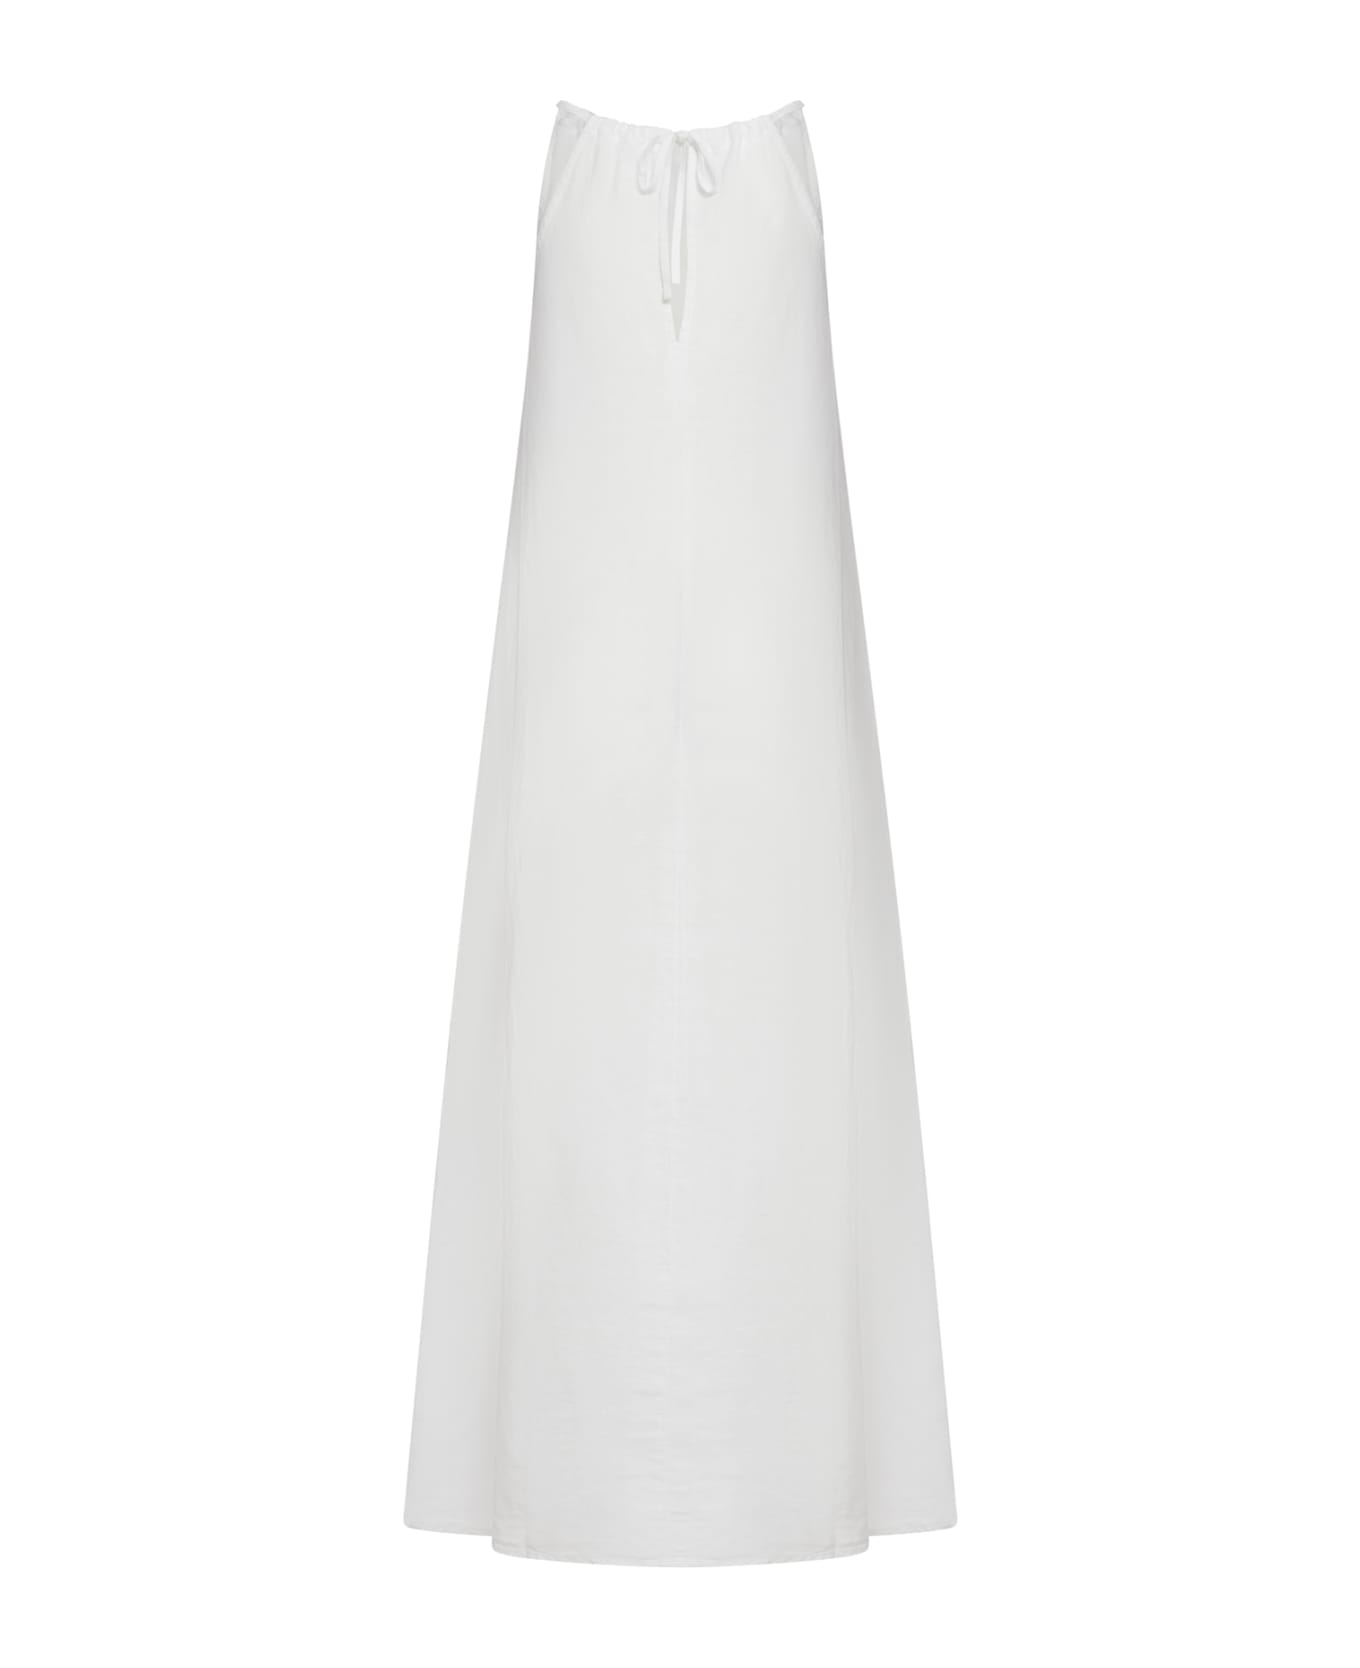 120% Lino Woman Dress - White